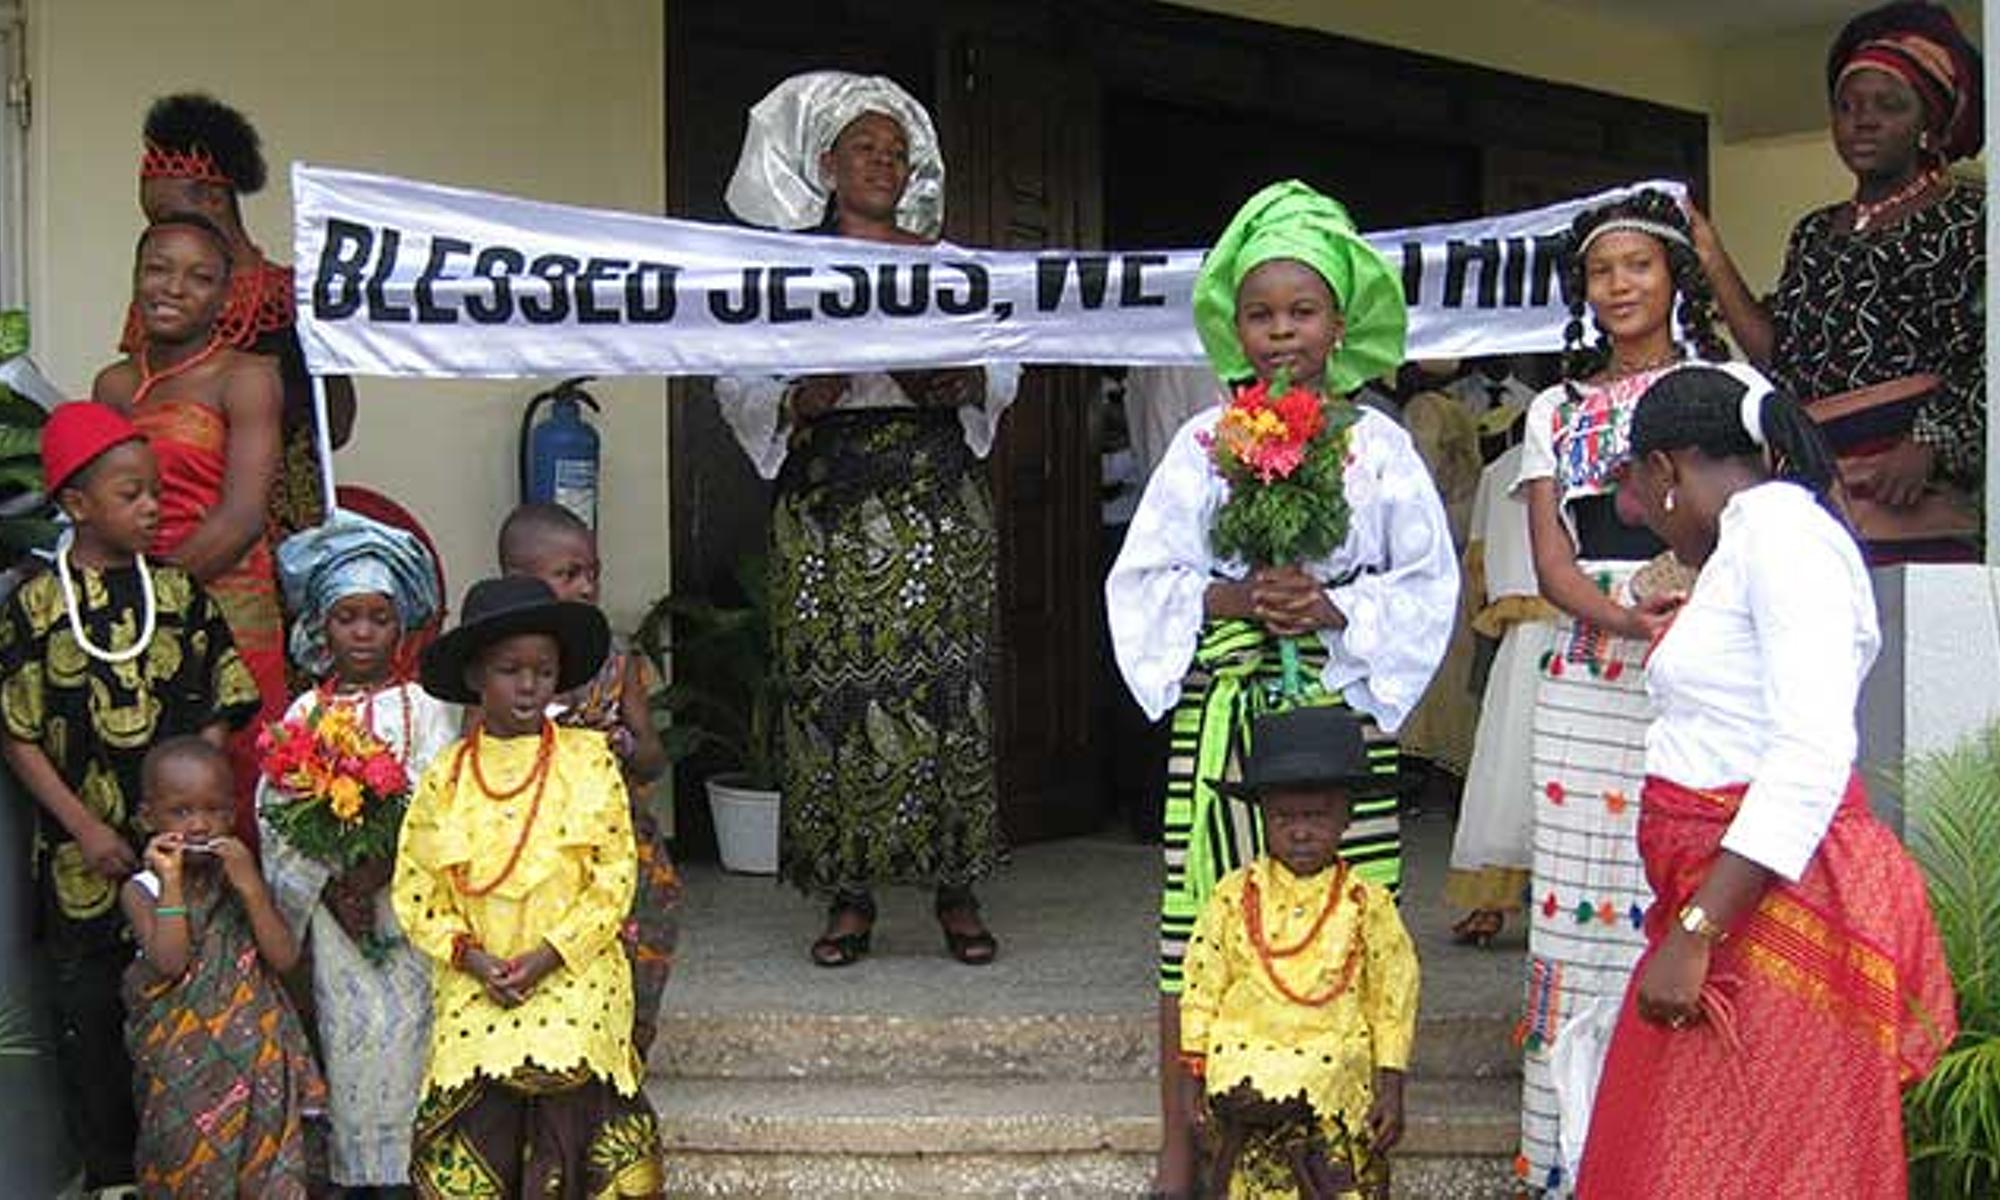 Gemeindemitglieder bilden ein "Begrüßungskomitee" in landestypischer Kleidung